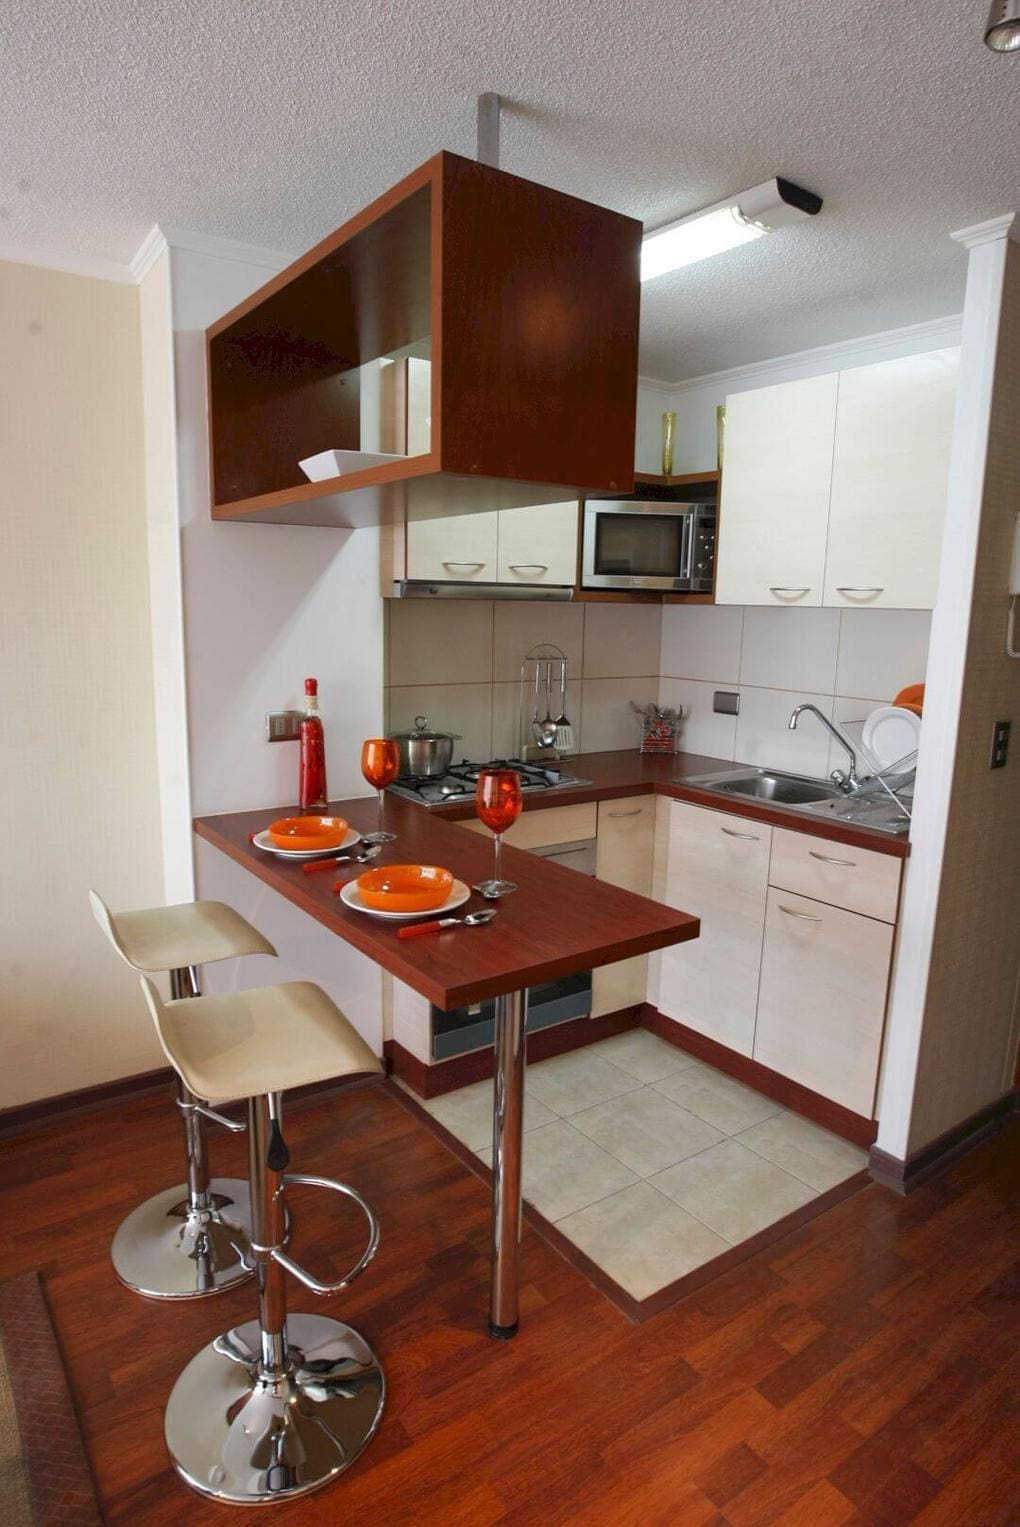 Отличные идеи дизайна маленьких кухонь, которые сделают ваше пространство уникальным